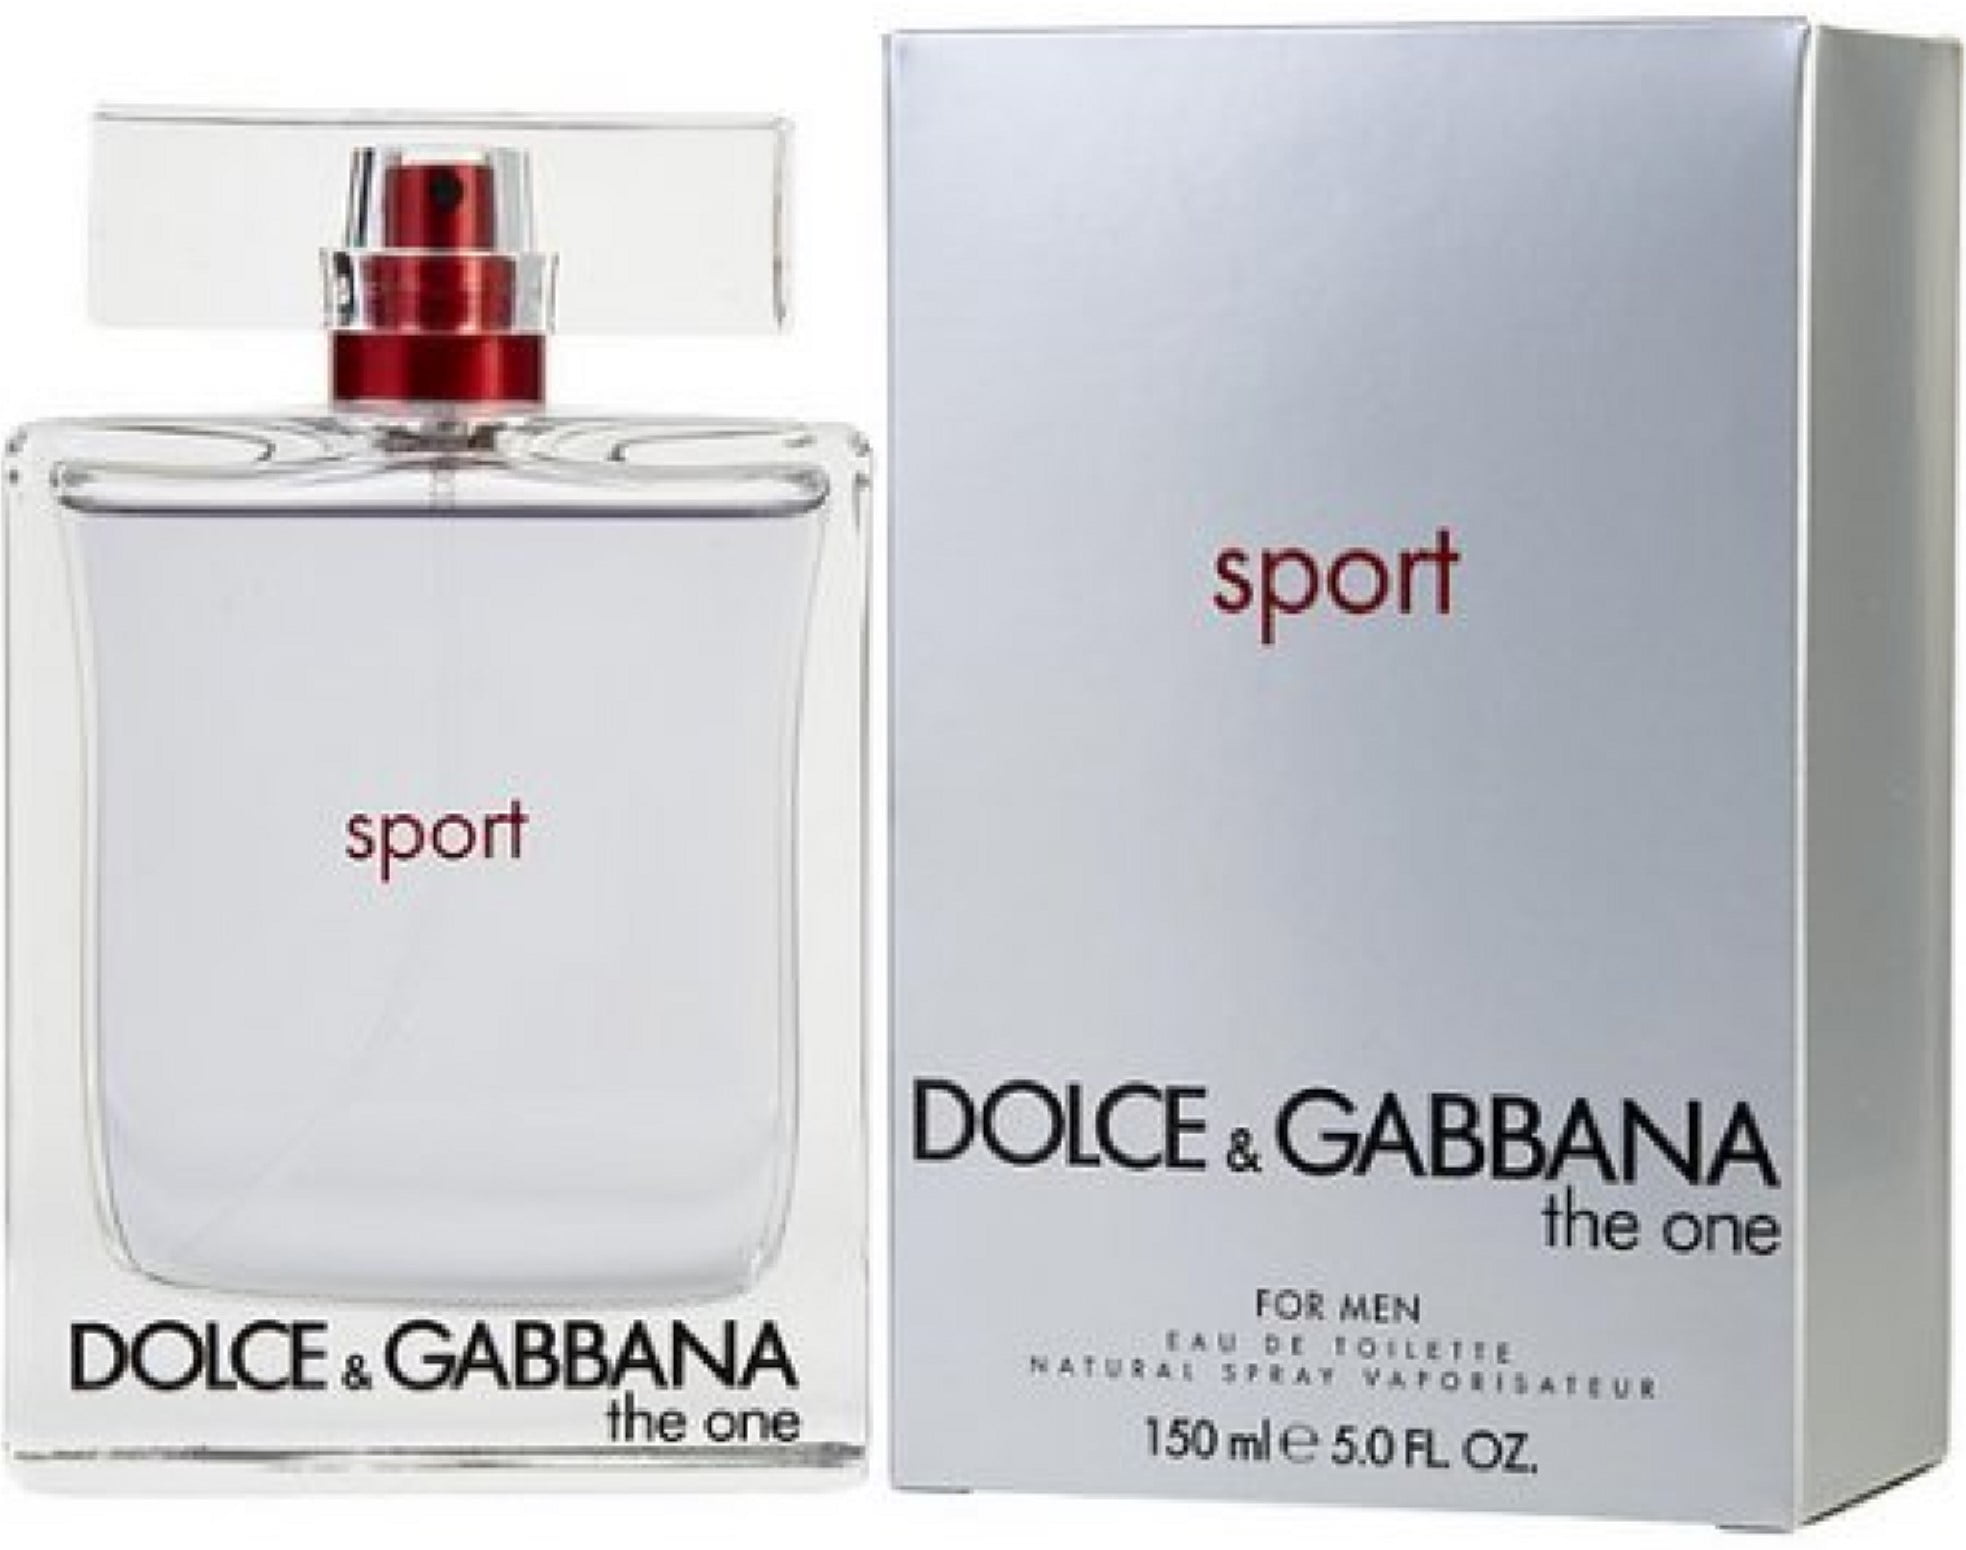 Dolce gabbana sport. Dolce Gabbana the one Sport Hugo Boss element 2009. Dolce Gabbana the one Sport for men.